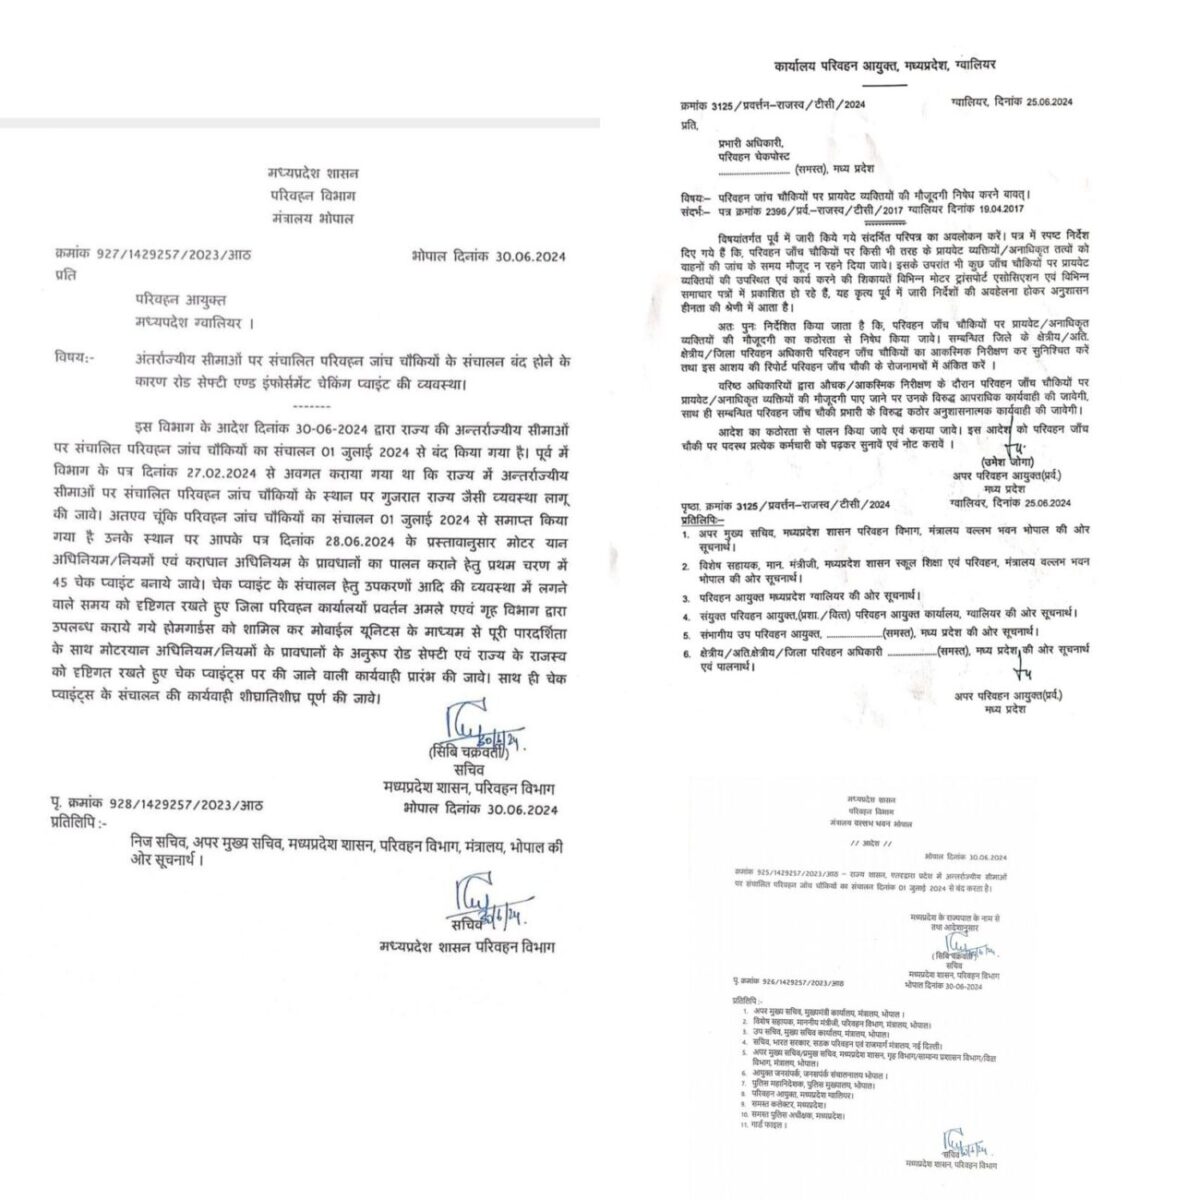 आरटीआई एक्टिविस्ट अजय दुबे ने भारत सरकार के प्रवर्तन निदेशालय को लिखा पत्र, मध्यप्रदेश के परिवहन विभाग में भ्रष्टाचार का मुद्दा उठाया